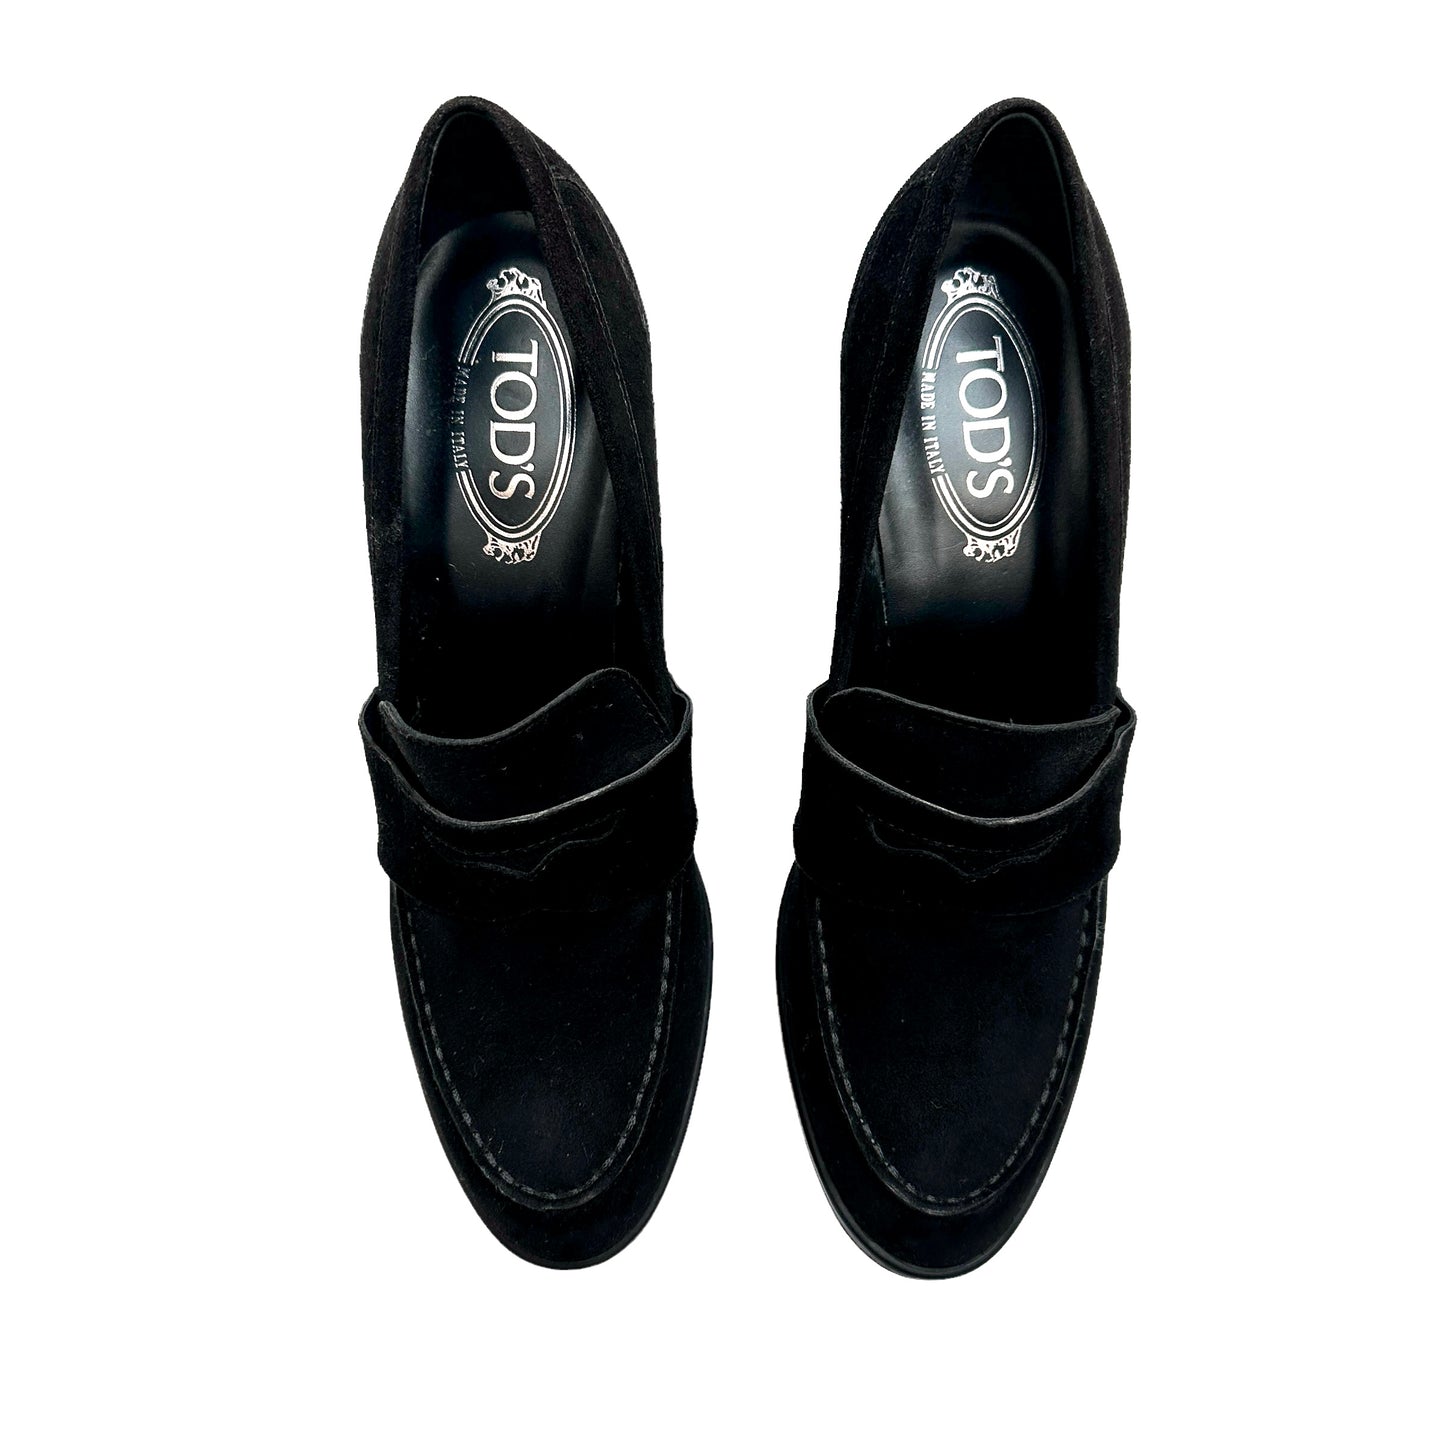 Black Suede High Heels - 10.5